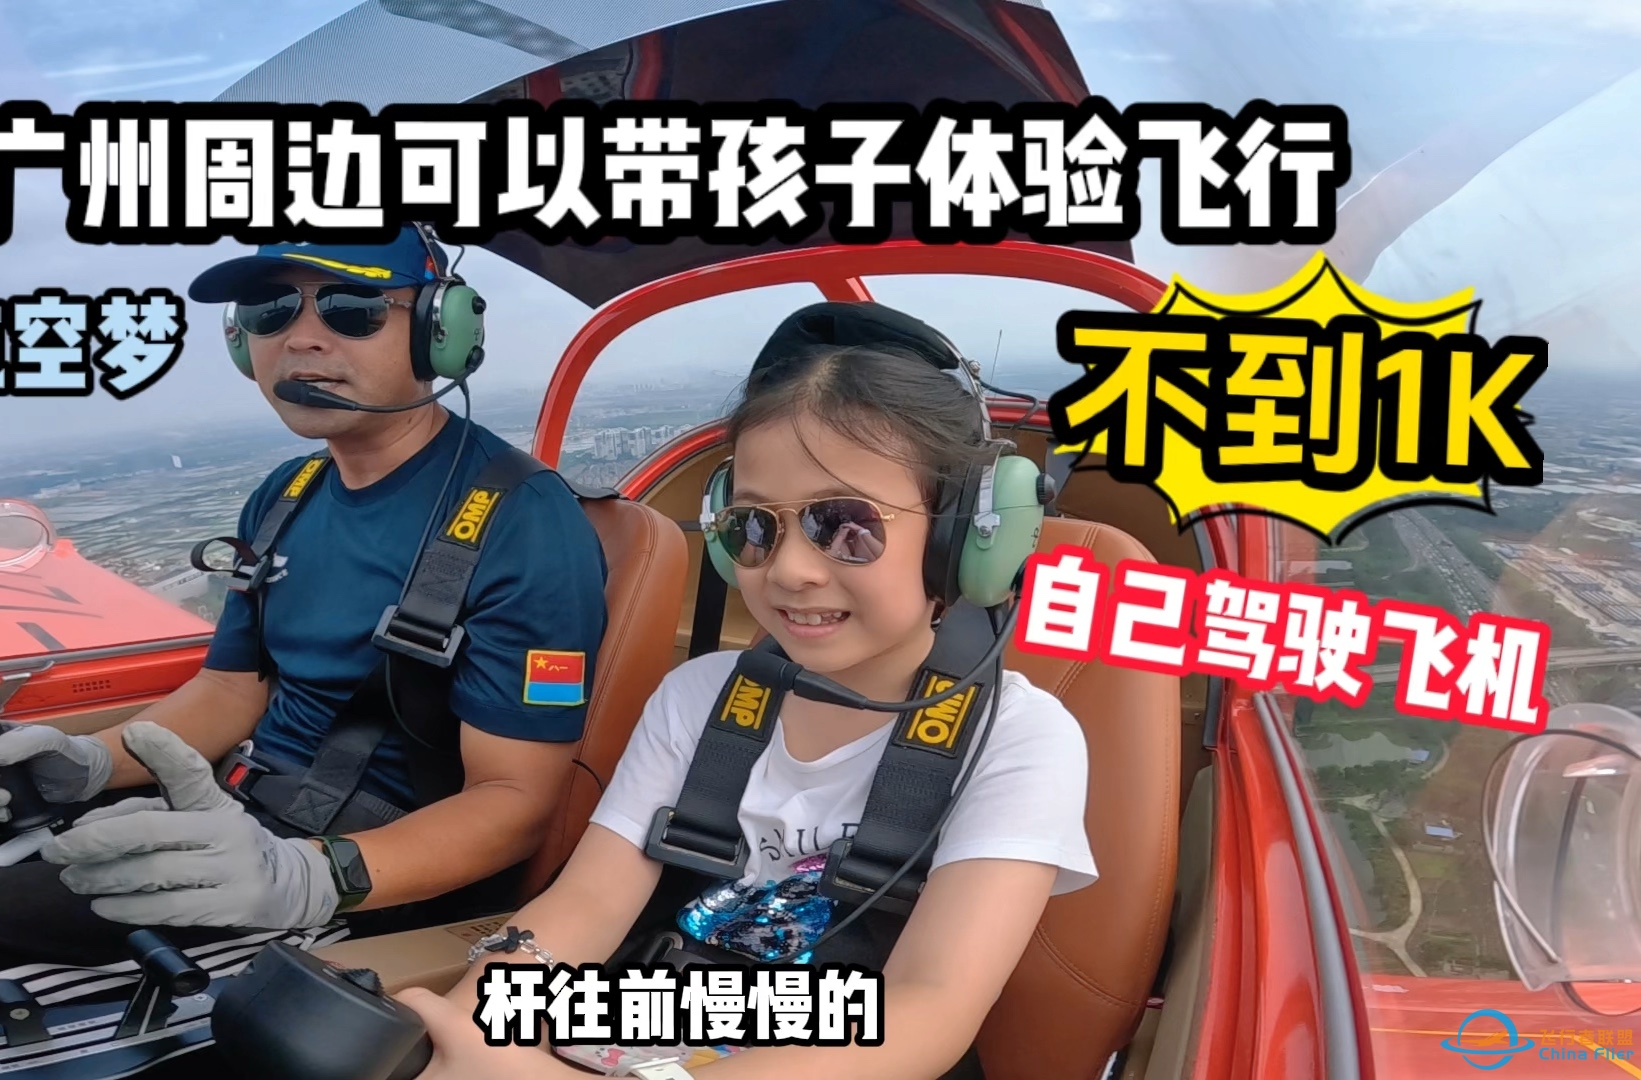 澳门10岁孩子的飞行体验第一次开飞机居然一点都不怕在广州深圳周边可以体验自己驾驶真飞机啦～比跳伞还刺激的运动 你敢来挑战吗？-5276 